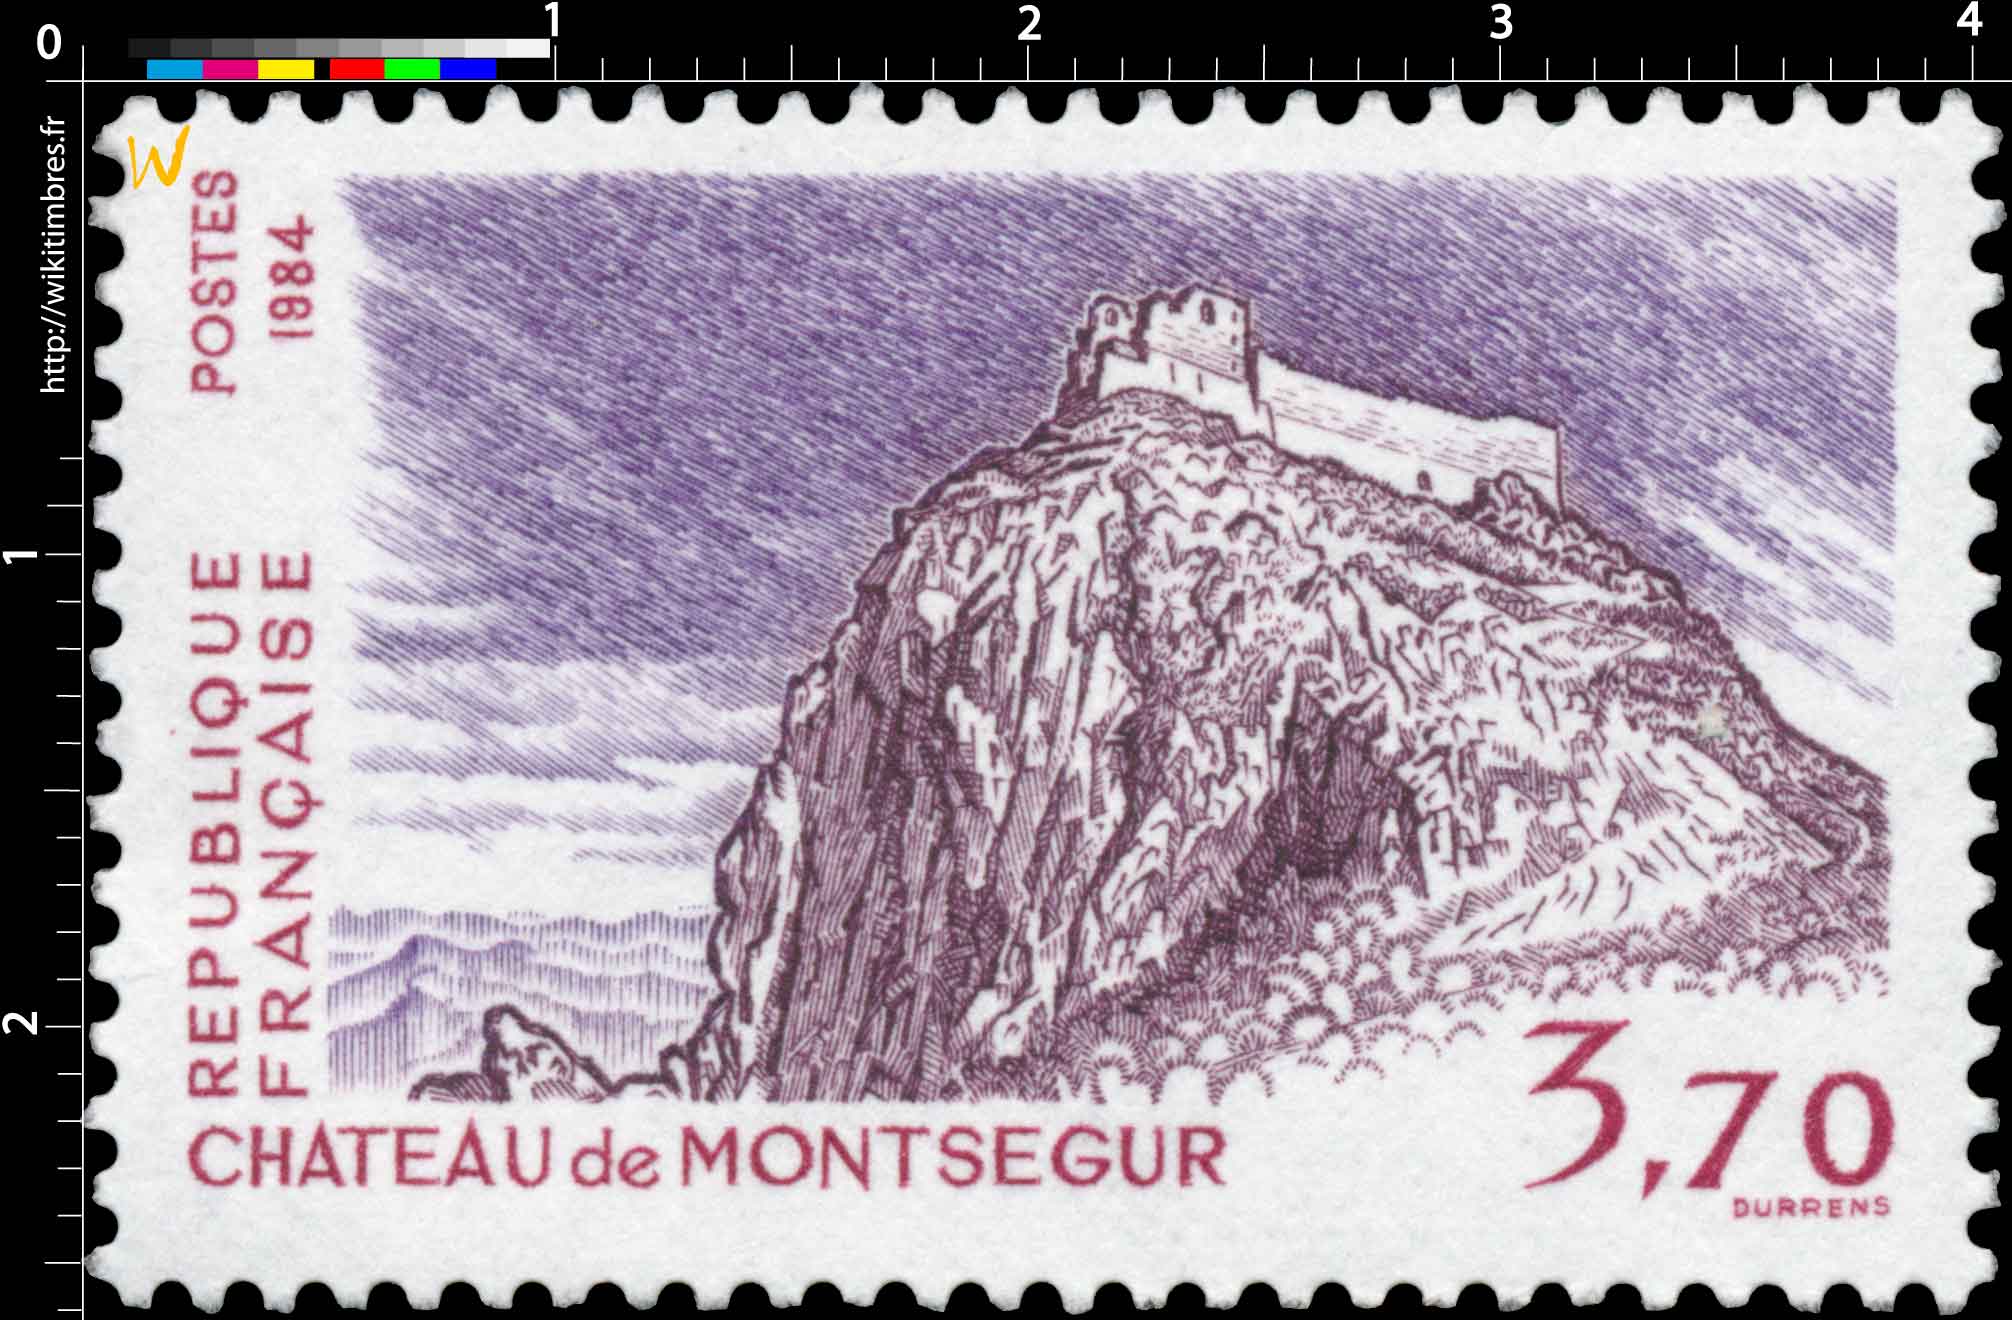 1984 CHÂTEAU de MONTSÉGUR